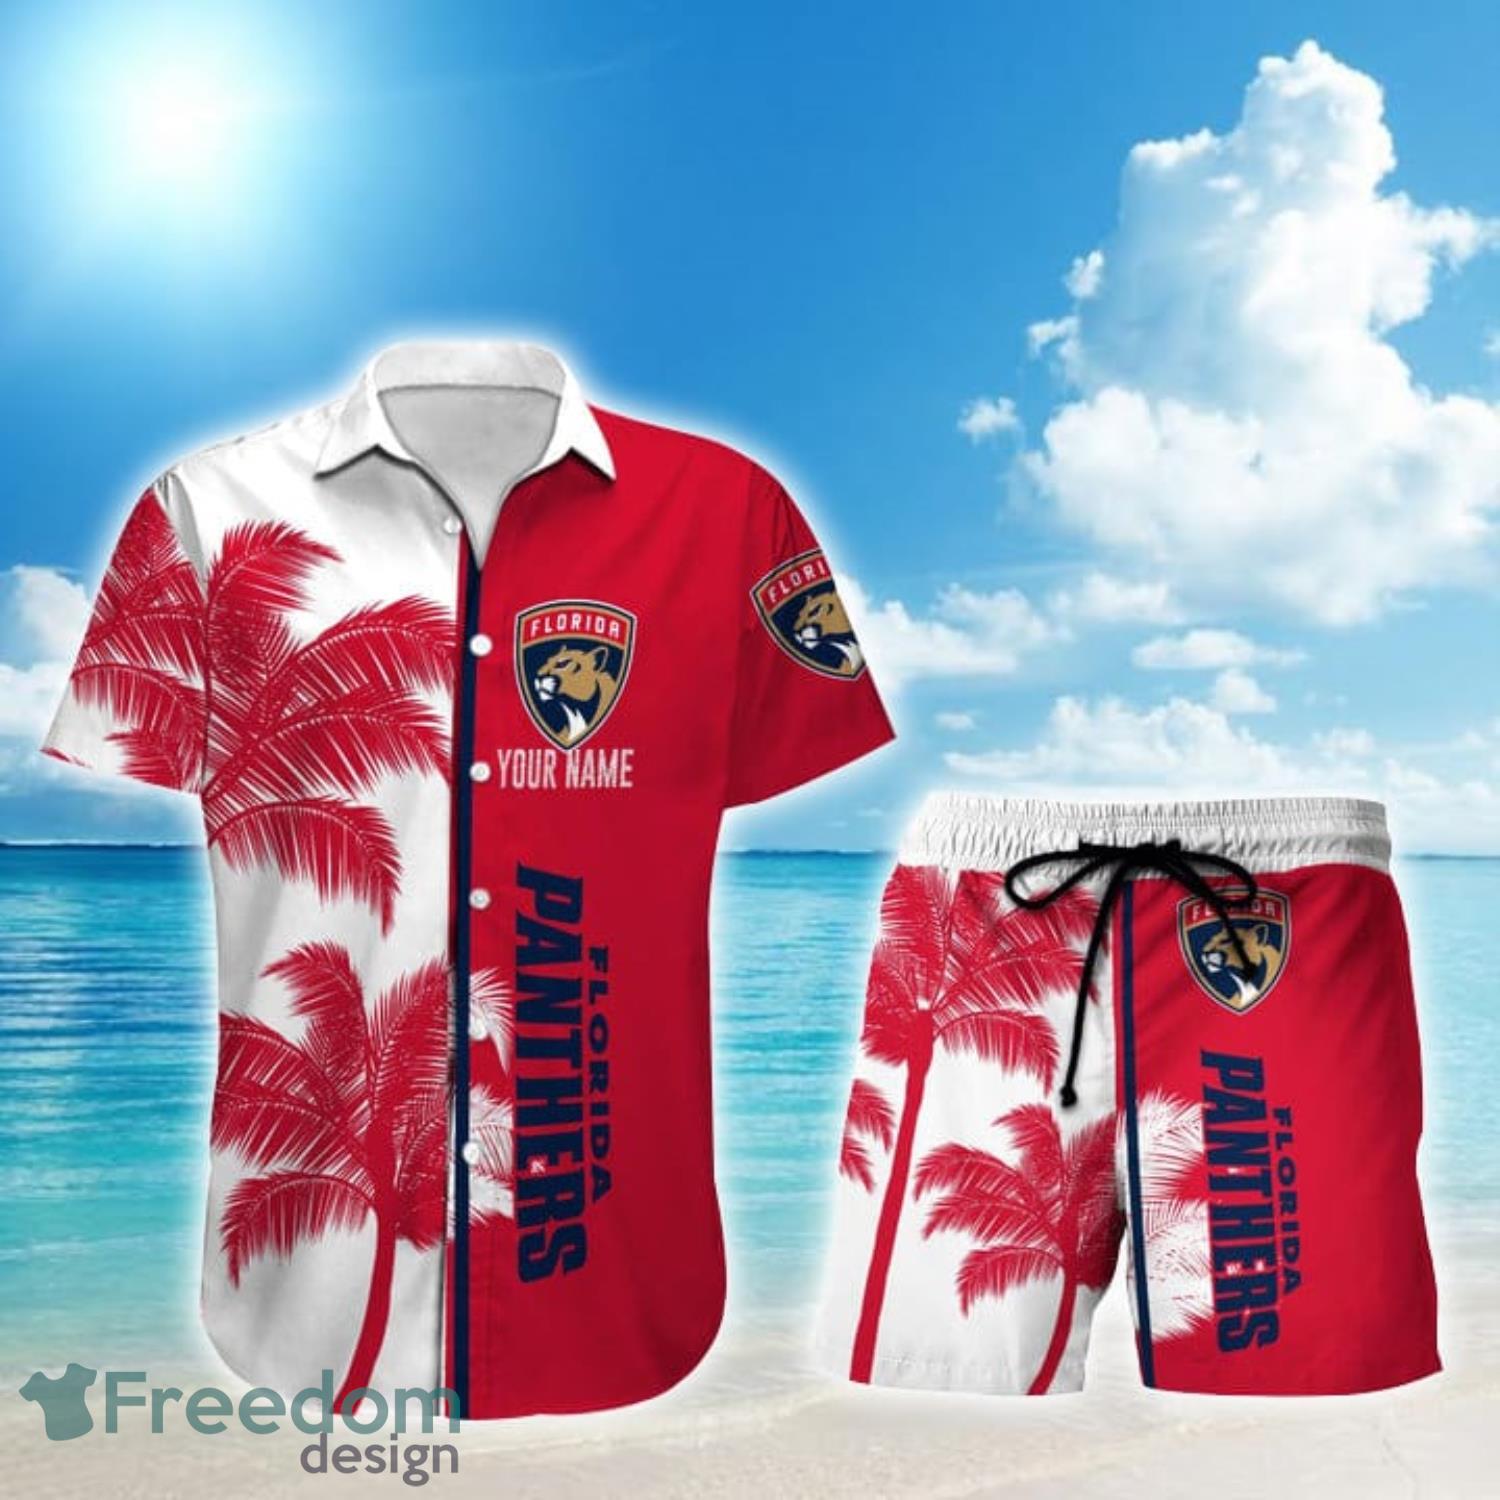 NHL Florida Panthers Hawaiian Shirt,Aloha Shirt,Palm Trees Pattern